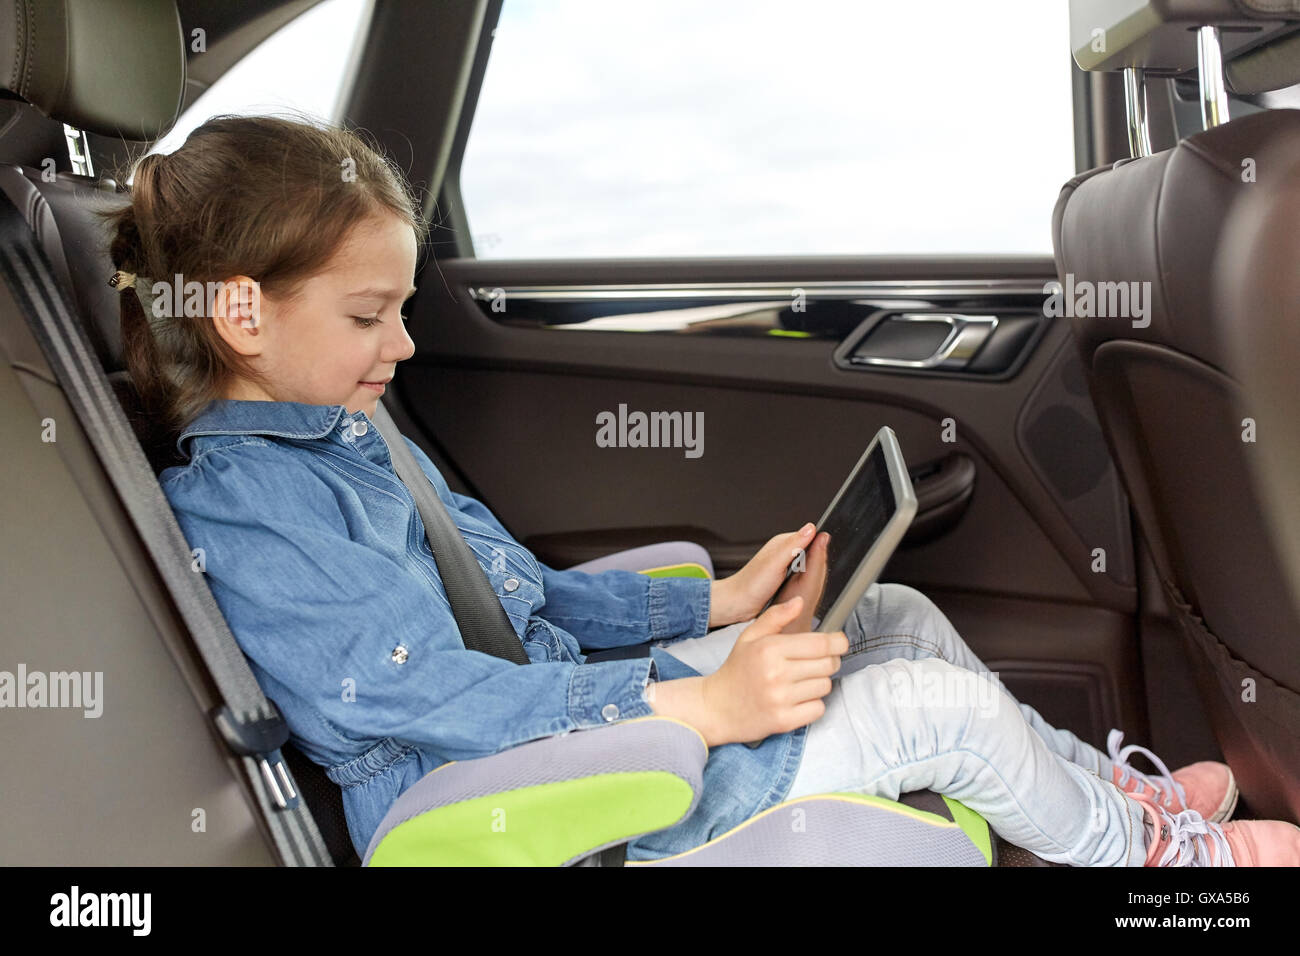 Включи дети и водители. Малыш с планшетом в машине. Ребенок в машине без кресла. Child in car. Дети с планшетом в руках в автомобиле.